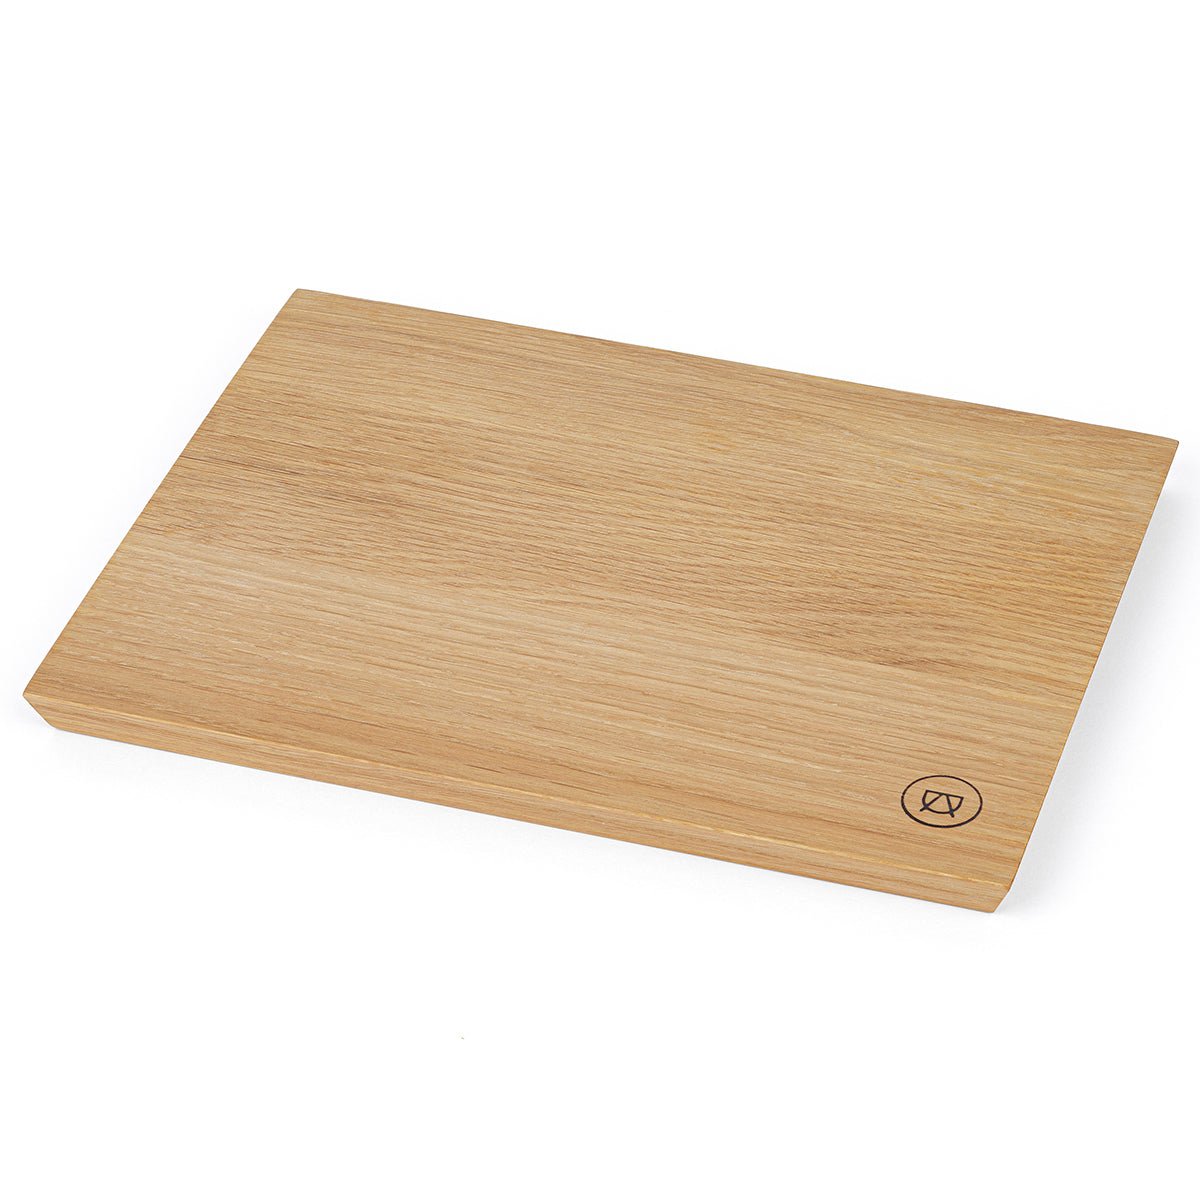 “Leopold” snack board made of fine oak wood